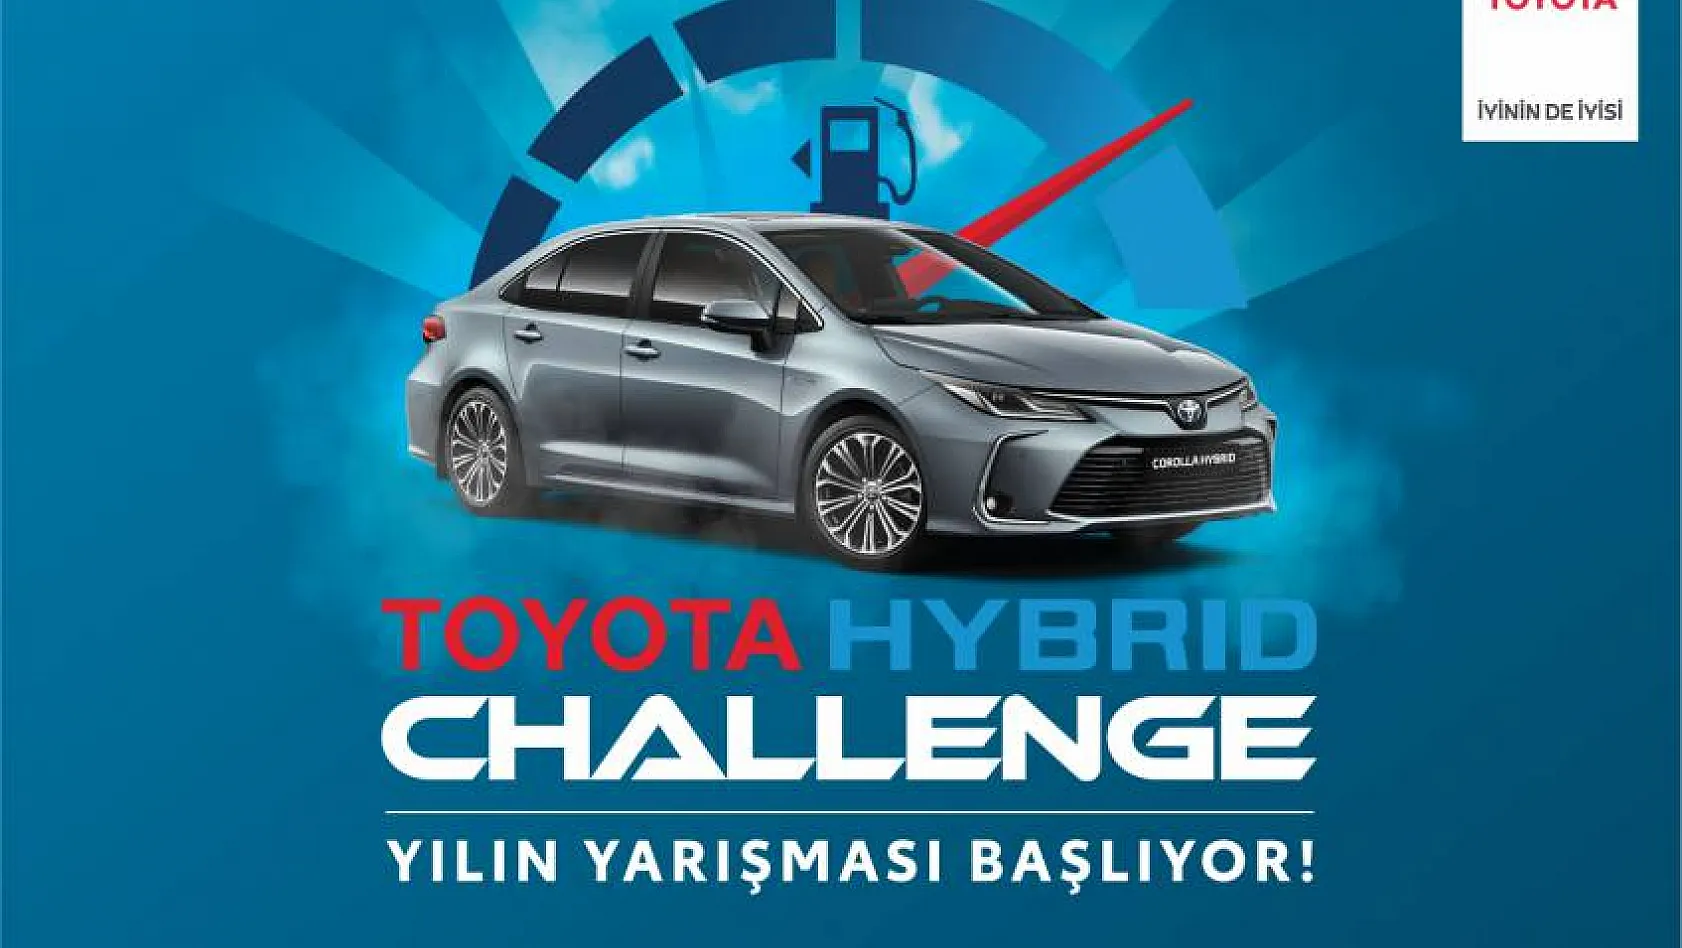 Sakın kaçırmayın... Toyota Plaza Aksoy'da Yılın Yarışması Başlıyor!